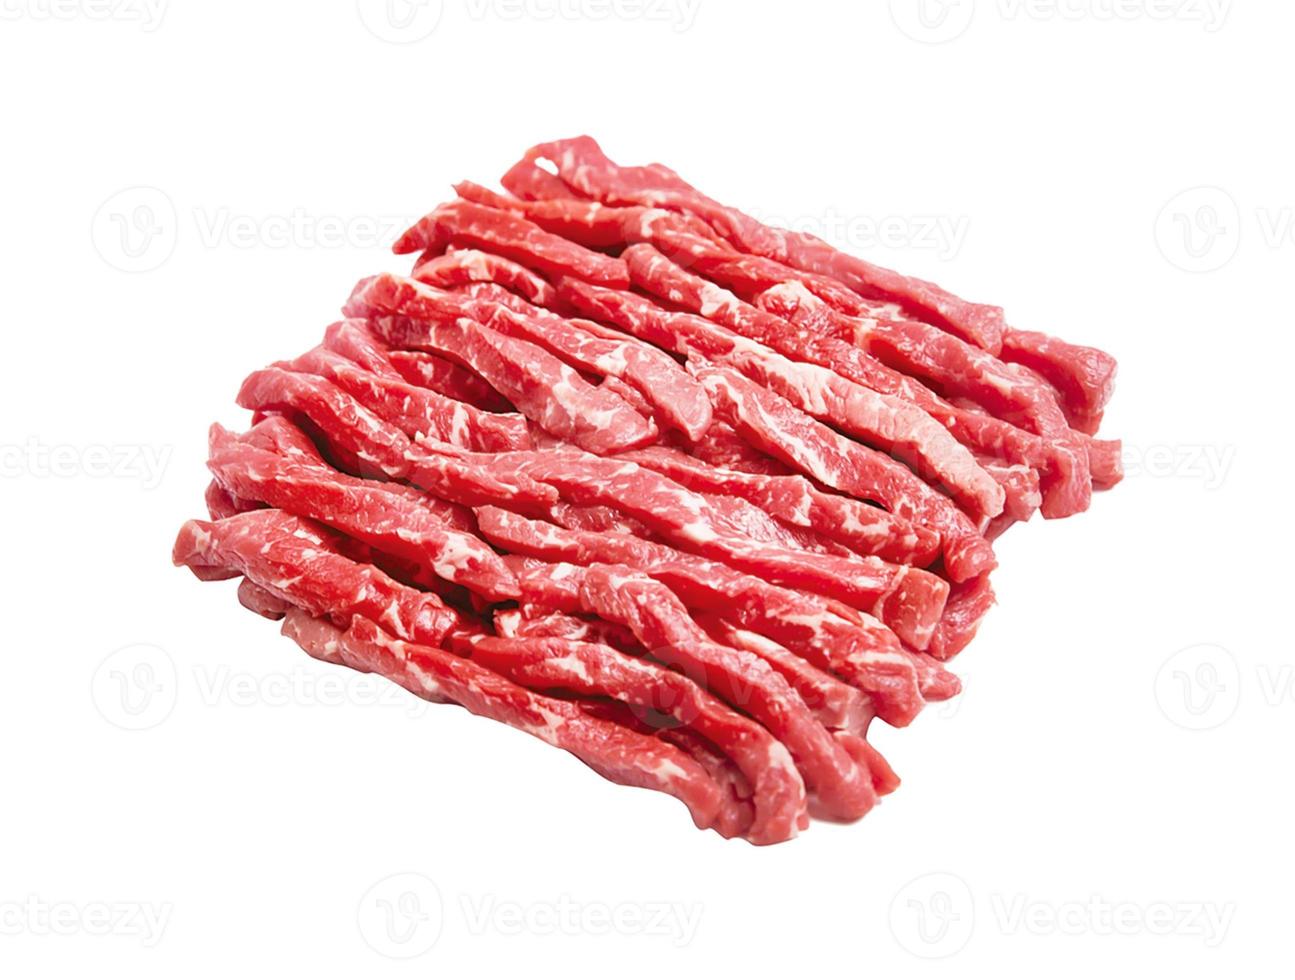 rohes Fleisch Angus Pfannengerichte, Hackfleisch isoliert auf weißem Hintergrund foto